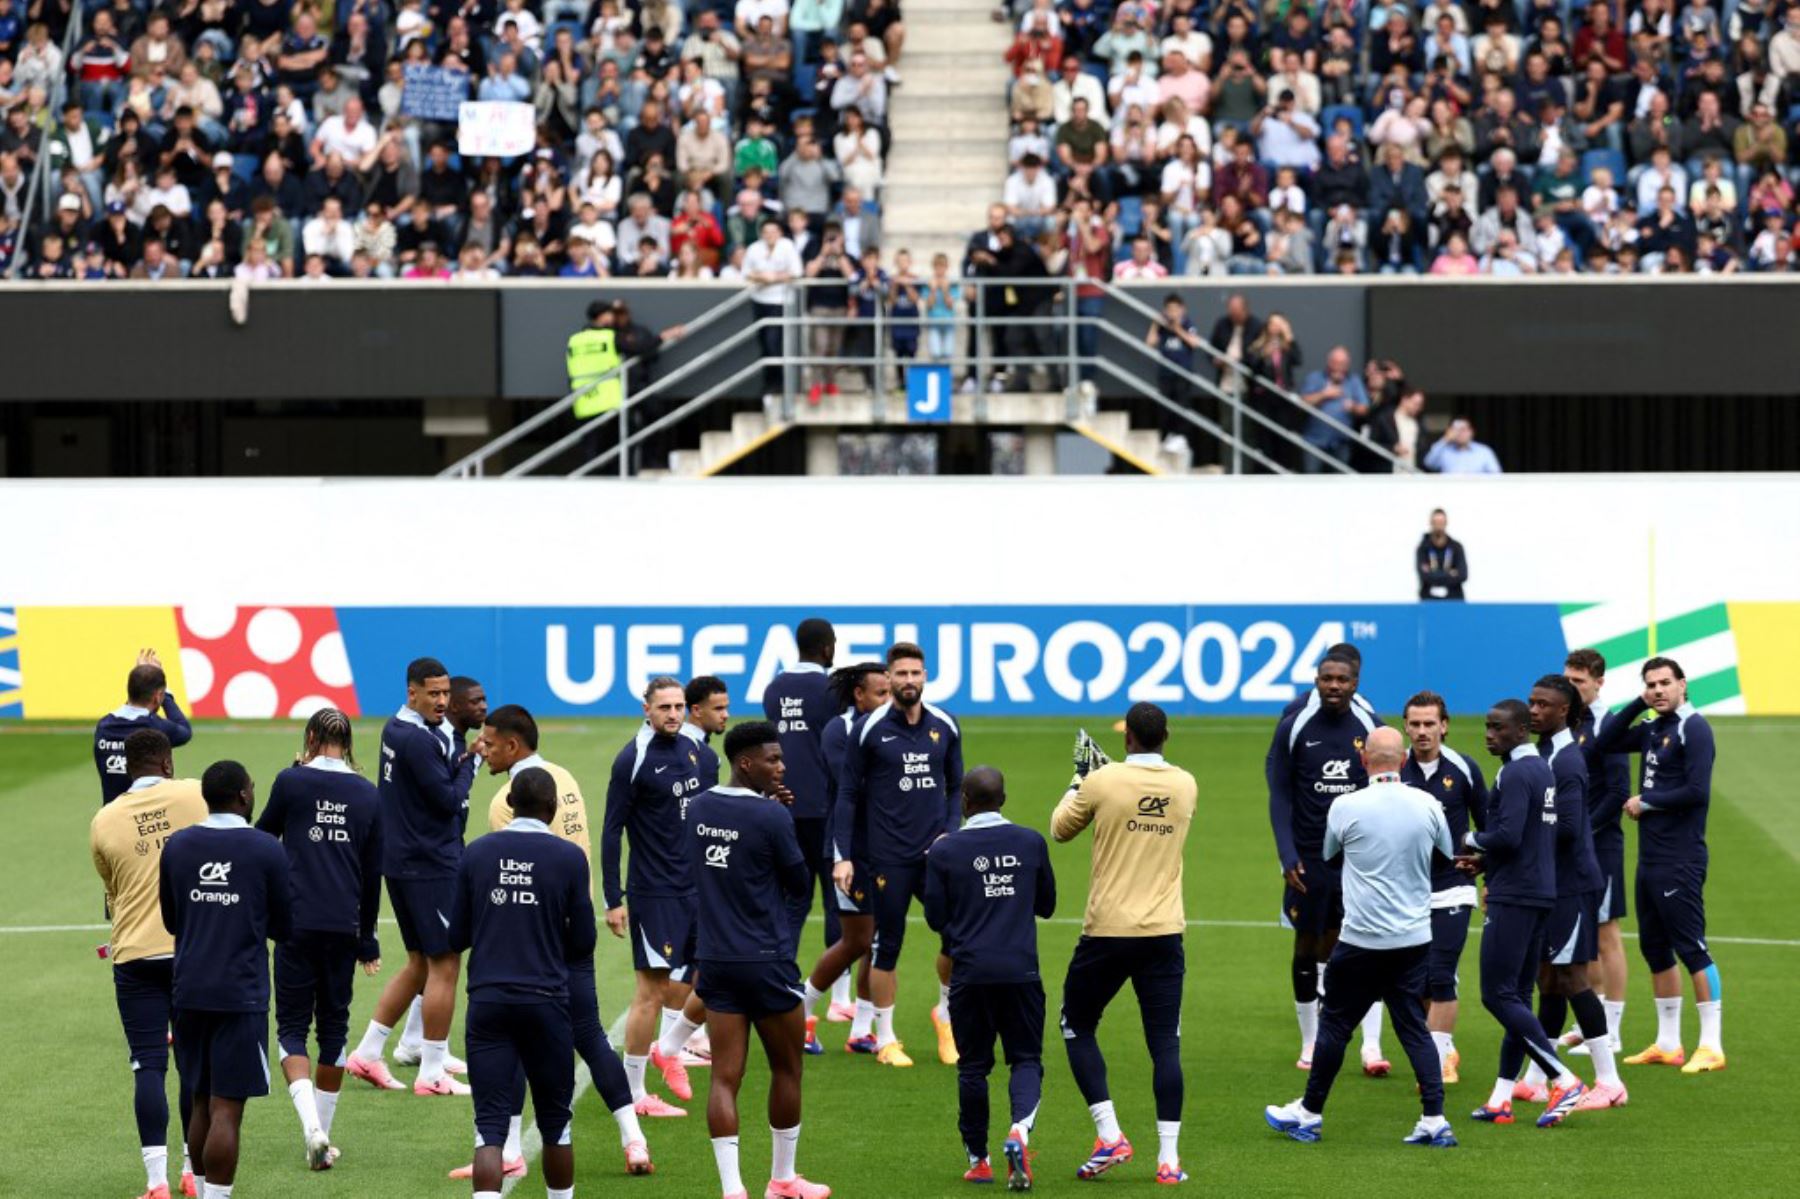 Los jugadores de Francia asisten a una sesión de entrenamiento en el estadio Home Deluxe Arena en Paderborn, oeste de Alemania, antes del campeonato de fútbol UEFA Euro 2024. Foto: AFP